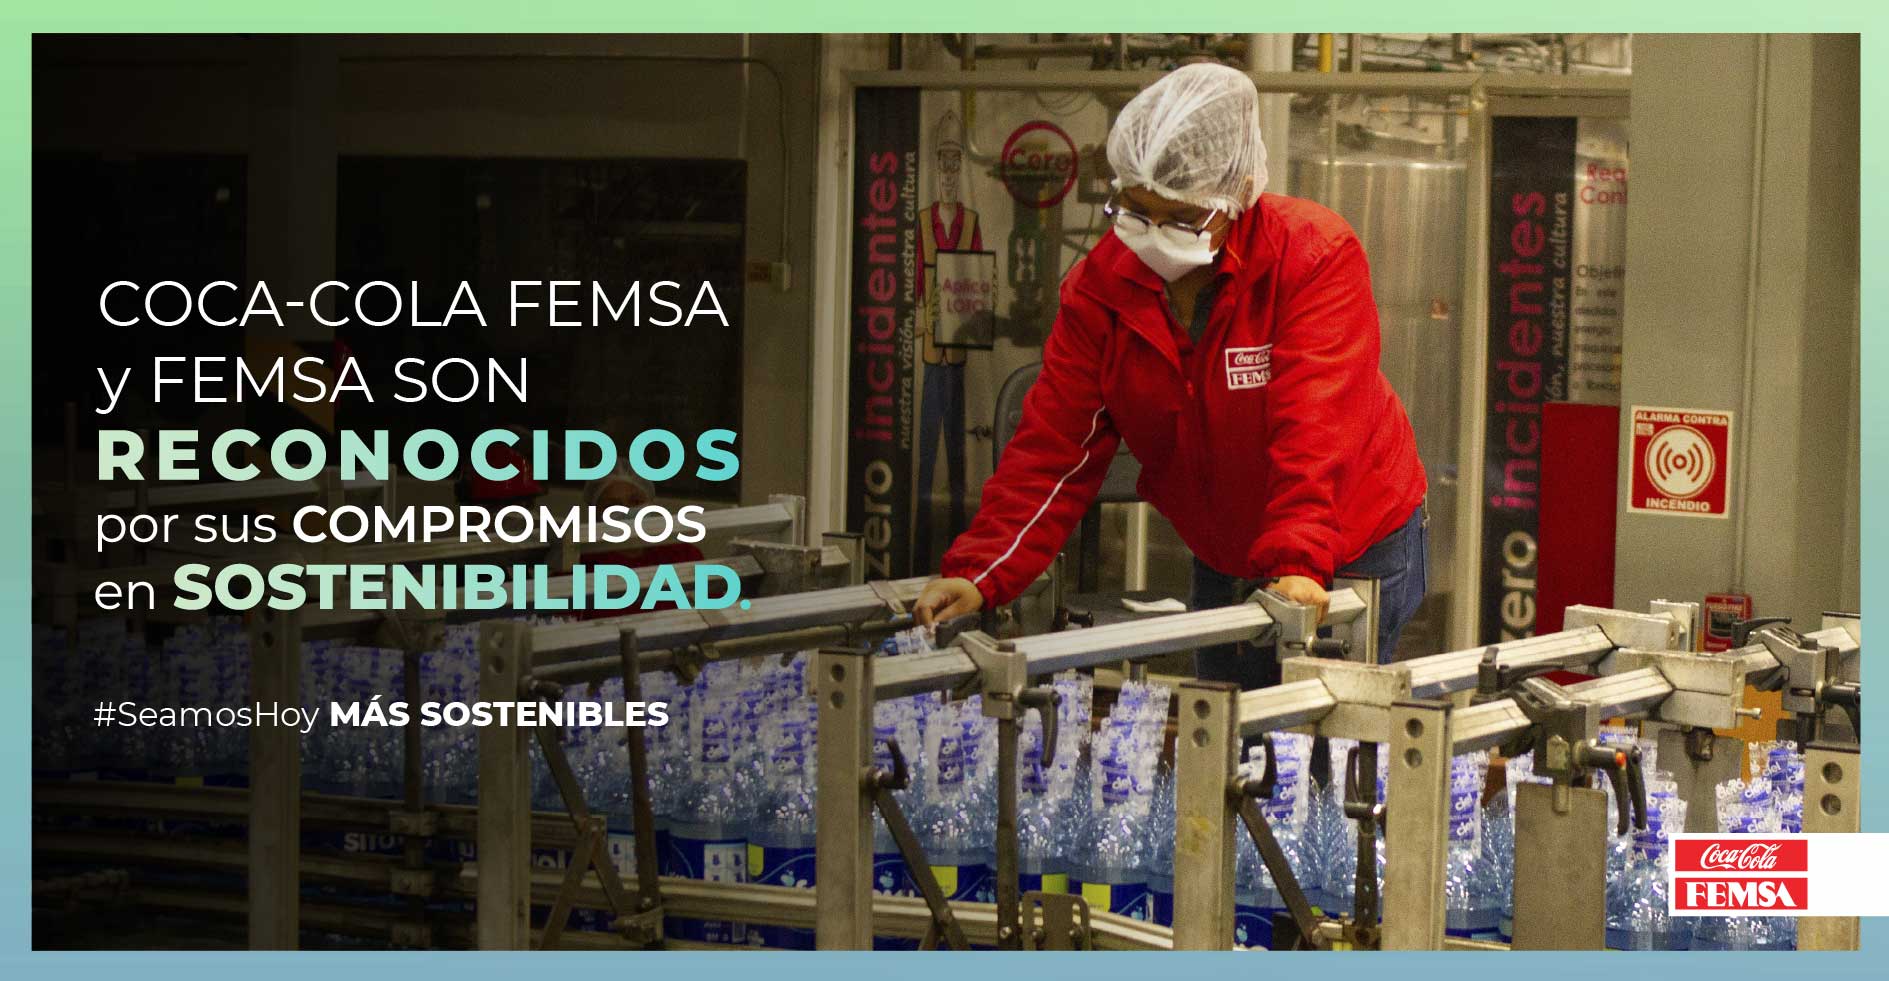 Siete años consecutivos de reconocimiento a Coca-Cola FEMSA y FEMSA en el índice FTSE4GOOD por sus compromisos en sostenibilidad